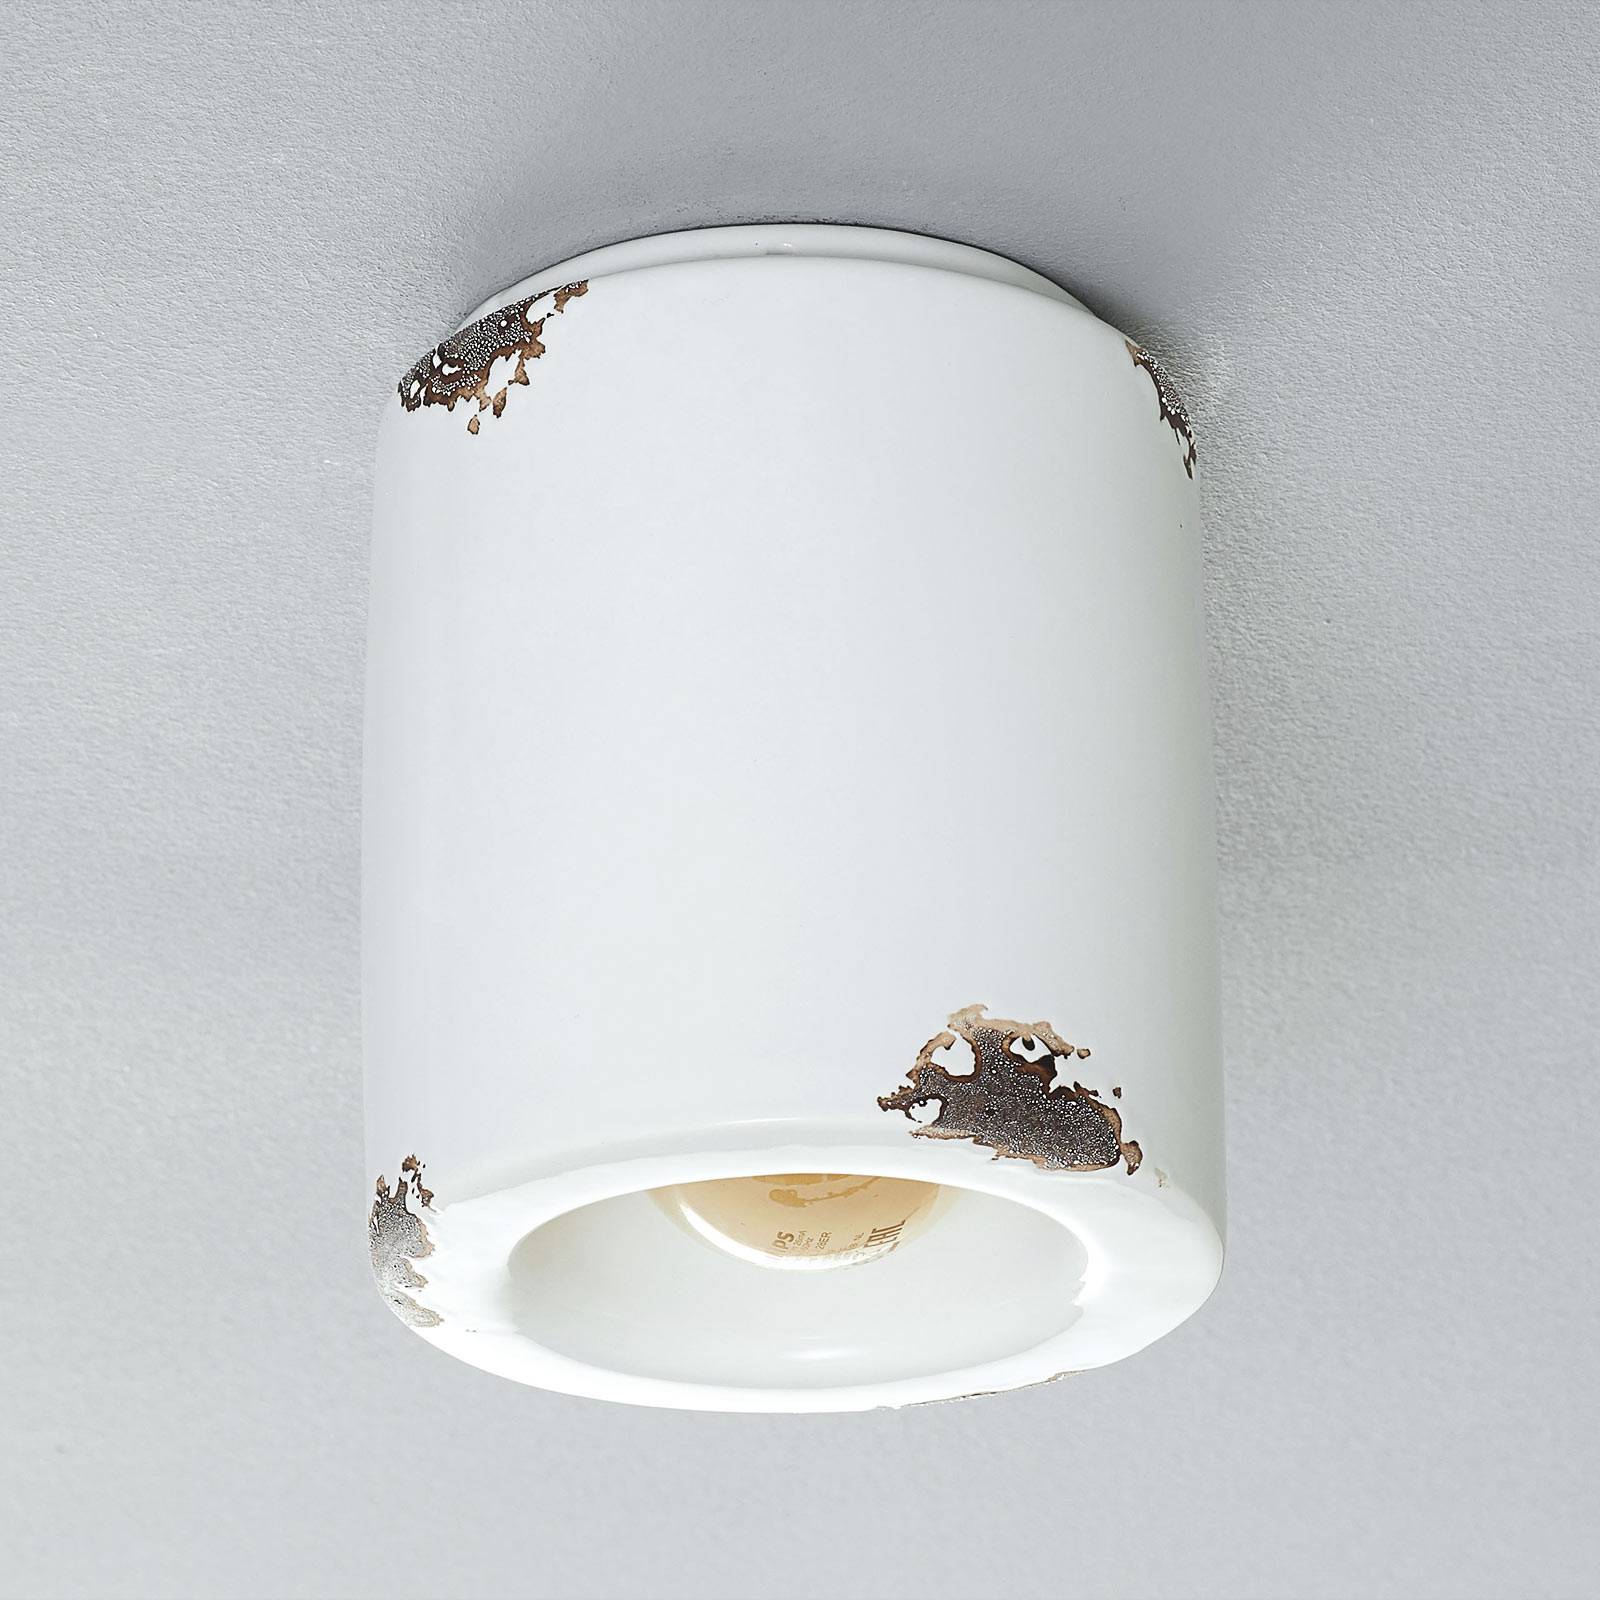 Lampa sufitowa C986 w stylu vintage, biała